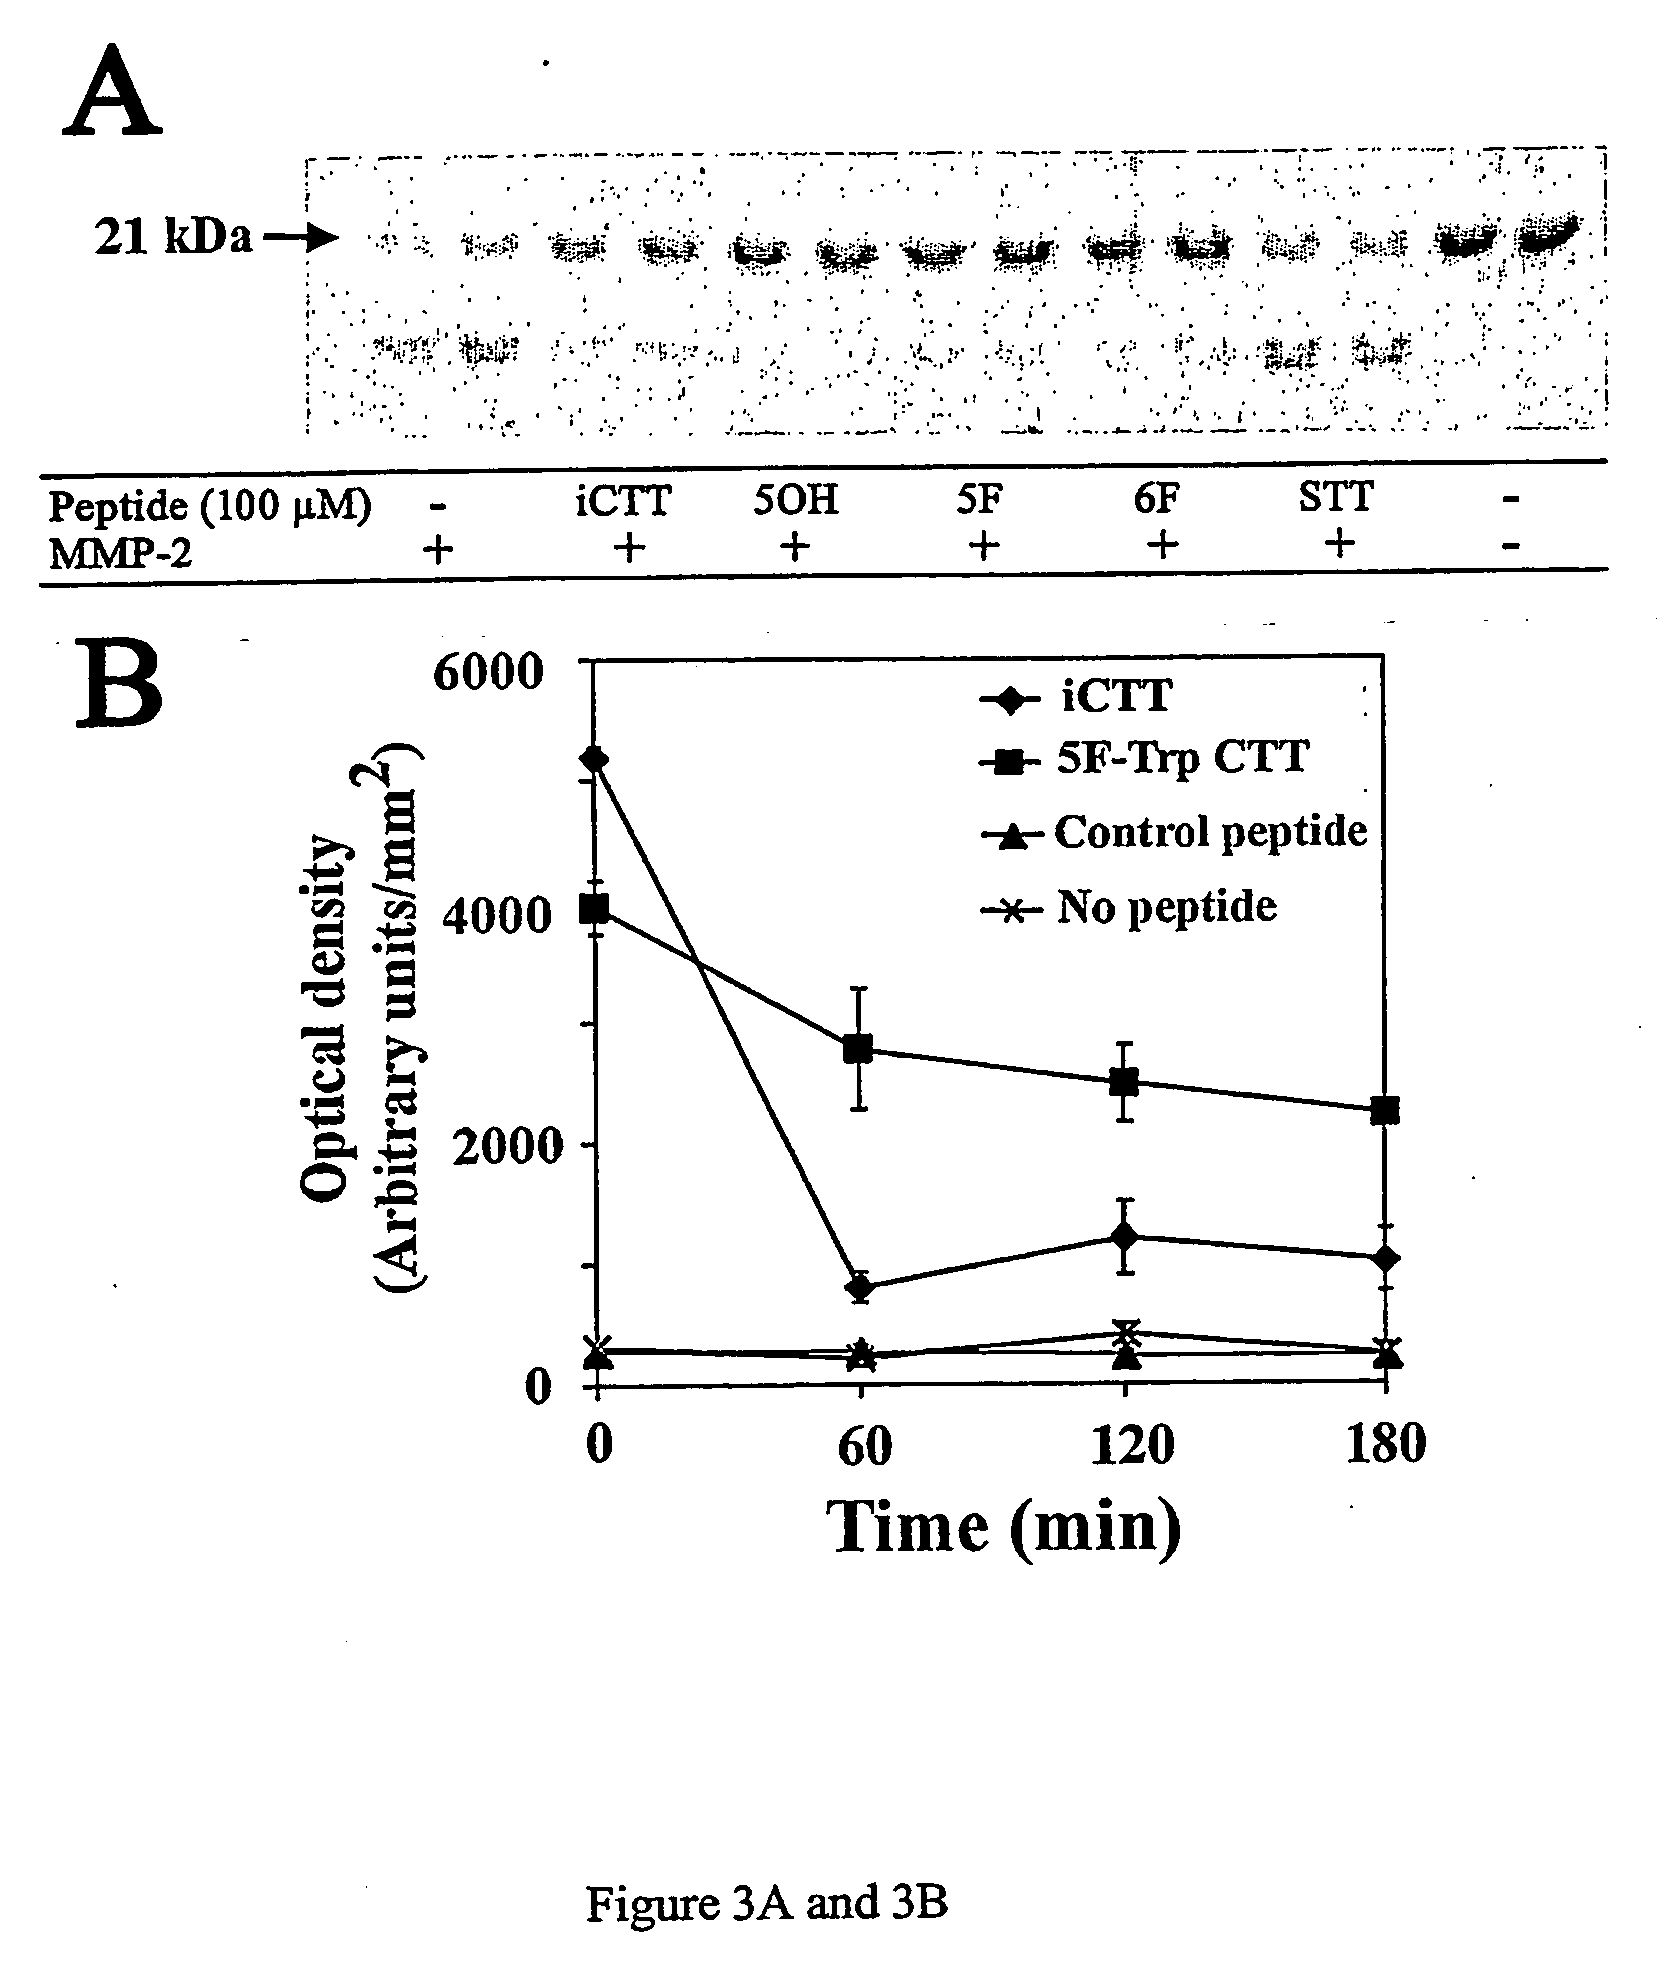 Method for designing peptides